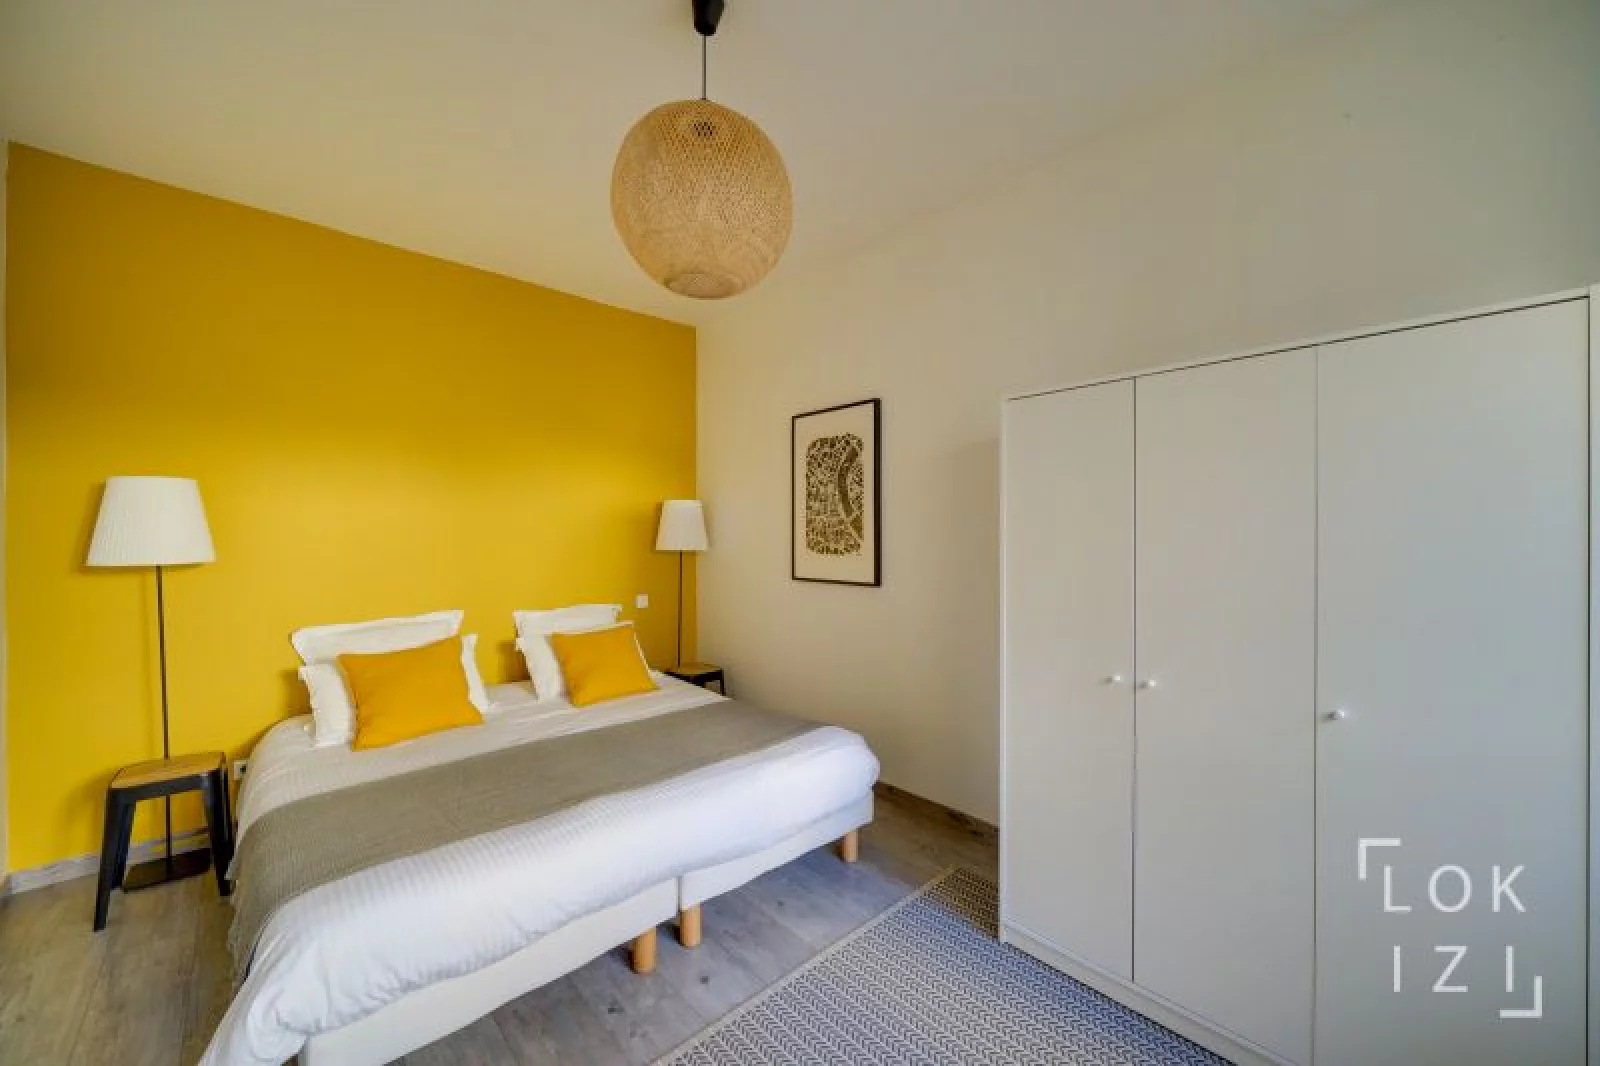 Location appartement meublé 4 pièces 100m² (Bordeaux - Chartrons)